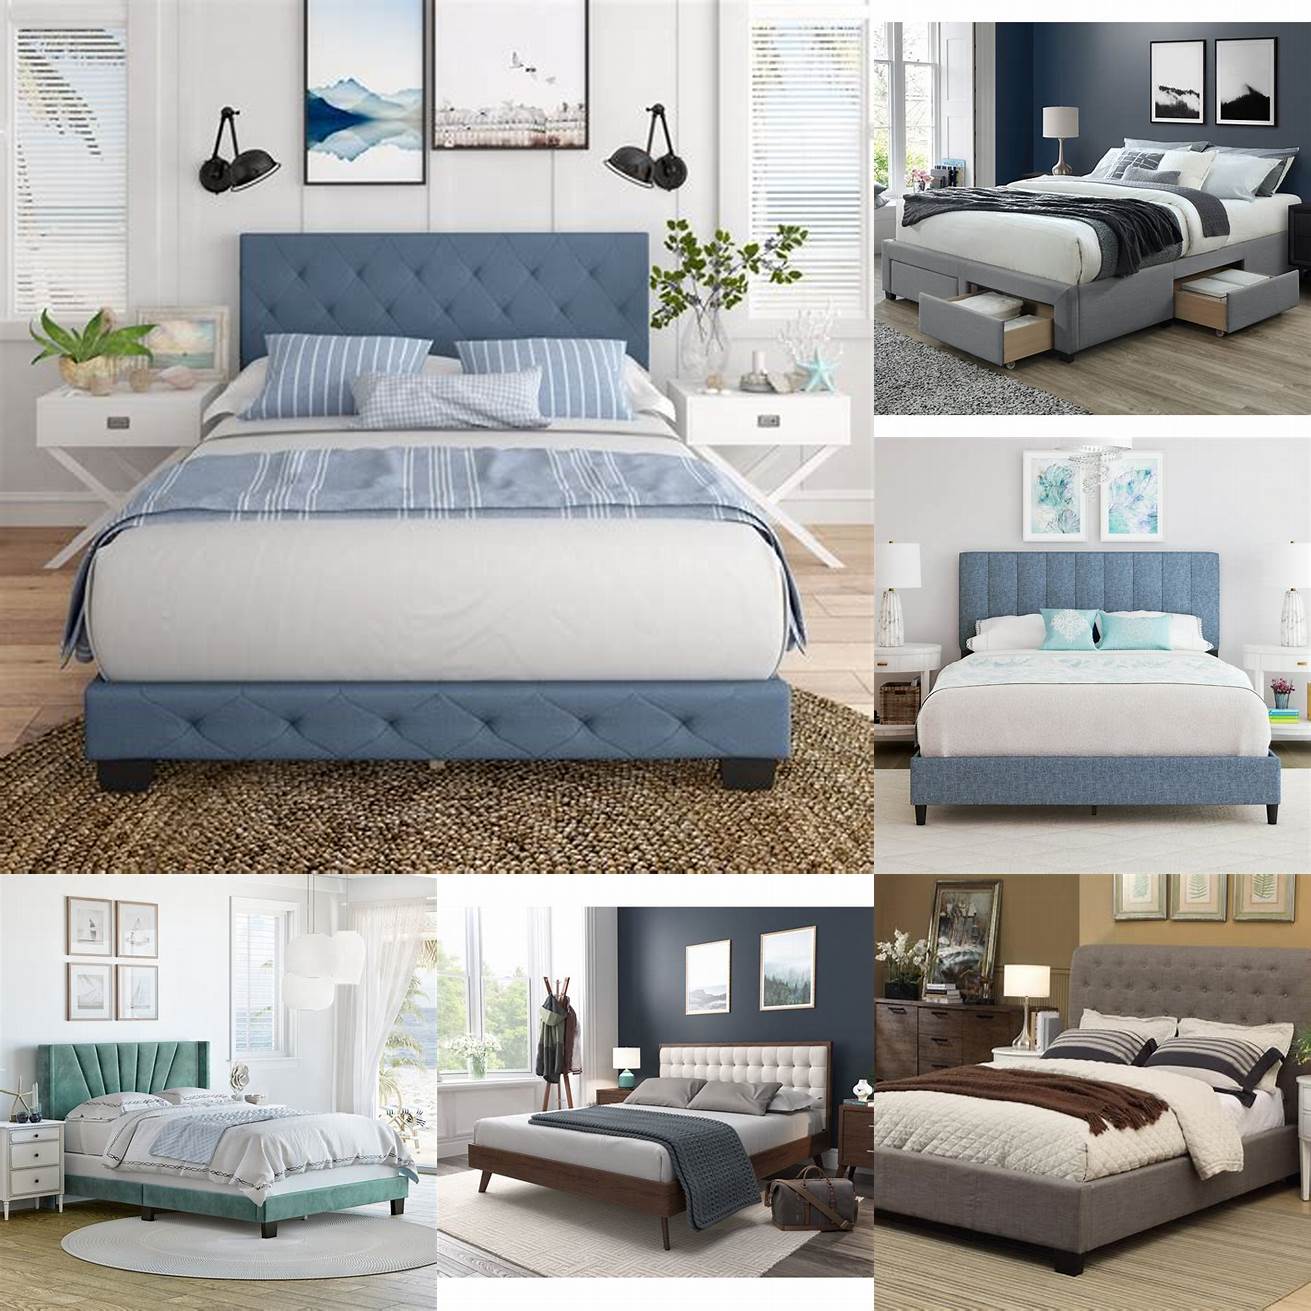 The Upholstered Platform Bed Queen in a cozy bedroom